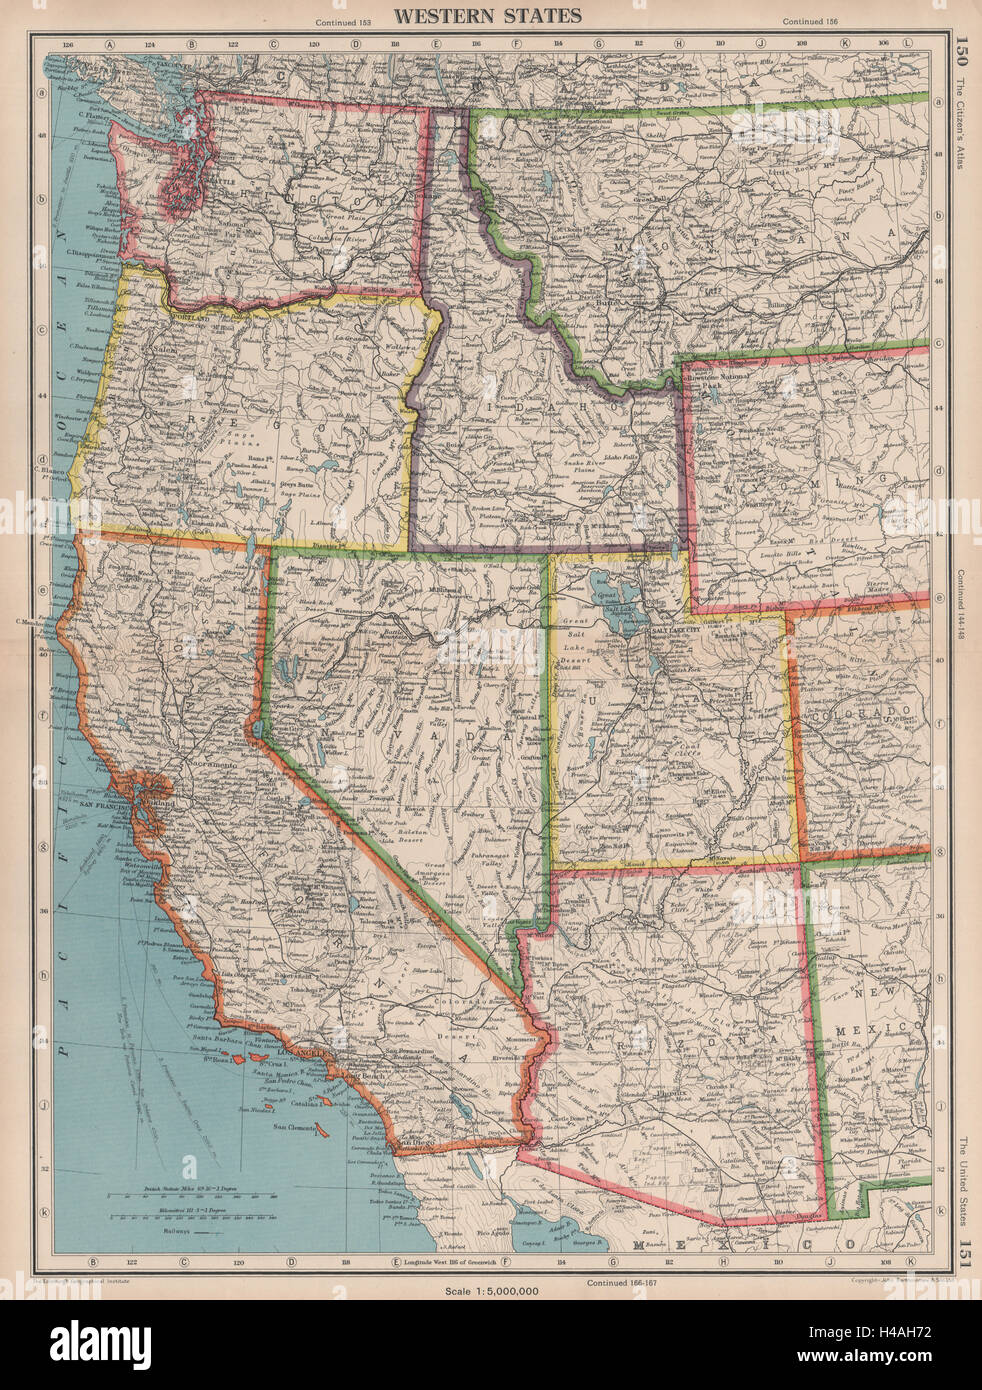 USA ETATS DE L'OUEST. Californie WASHINGTON WA ID NV AZ UT. BARTHOLOMEW 1944 map Banque D'Images